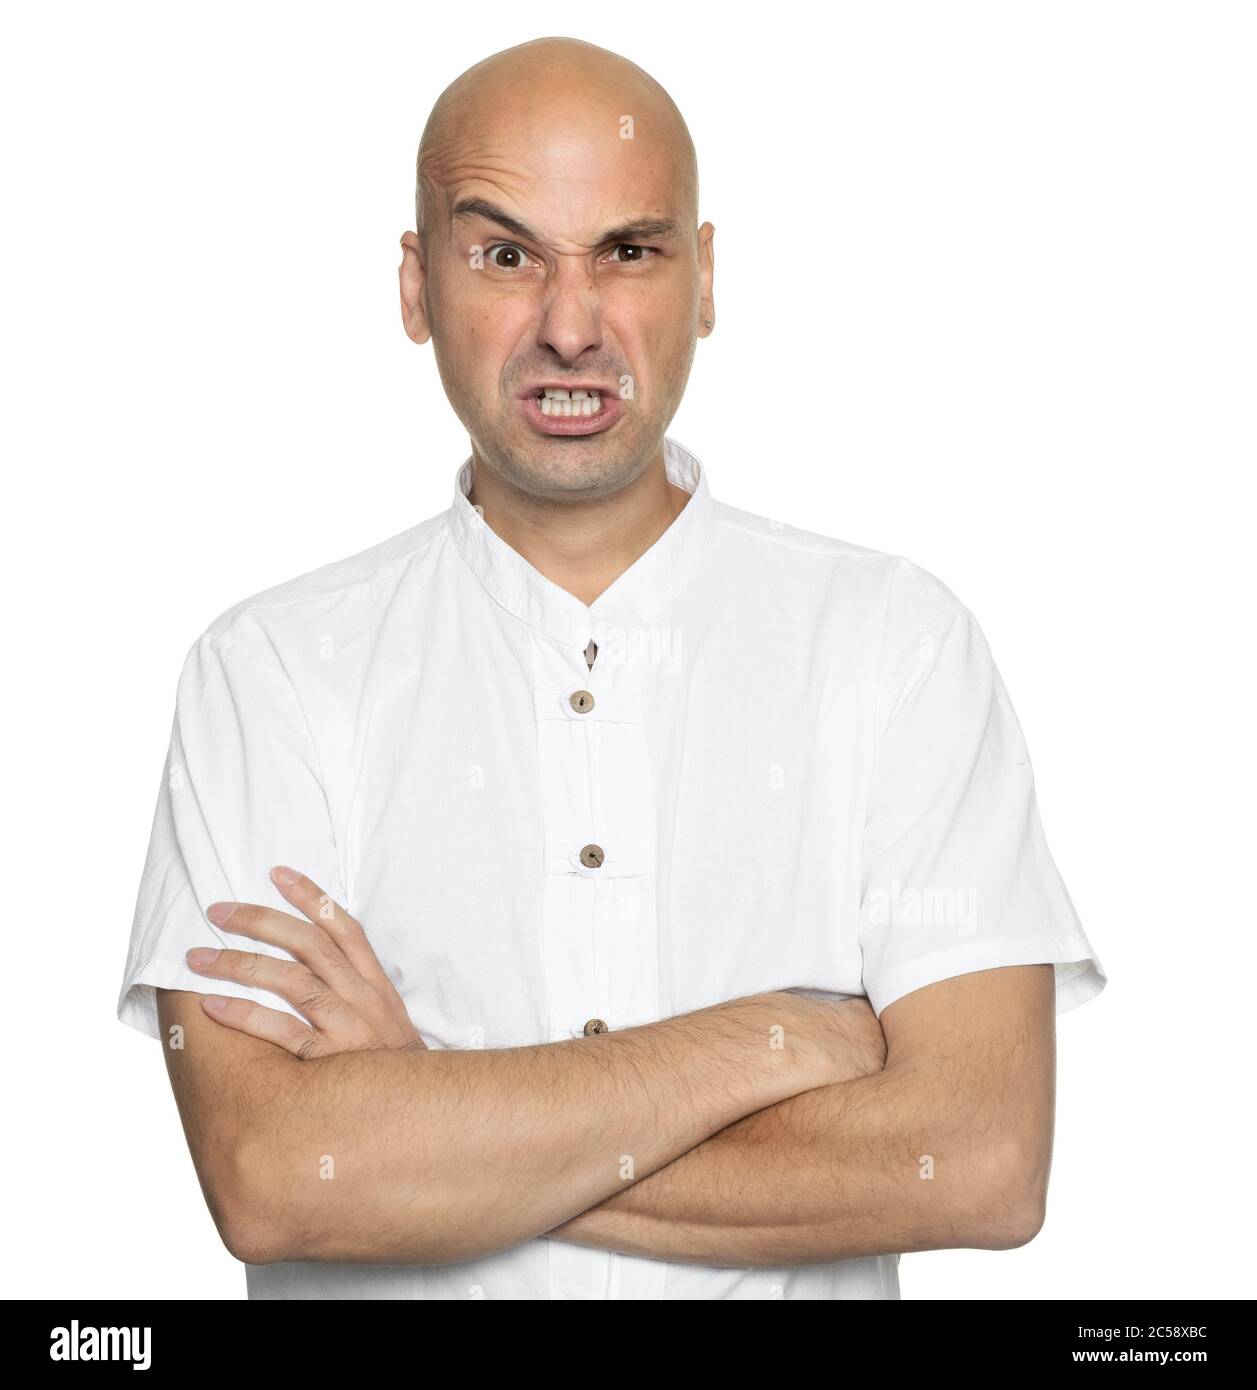 Un hombre enojado y calvo de mal humor está usando una camisa blanca informal que te mira. Aislado Foto de stock